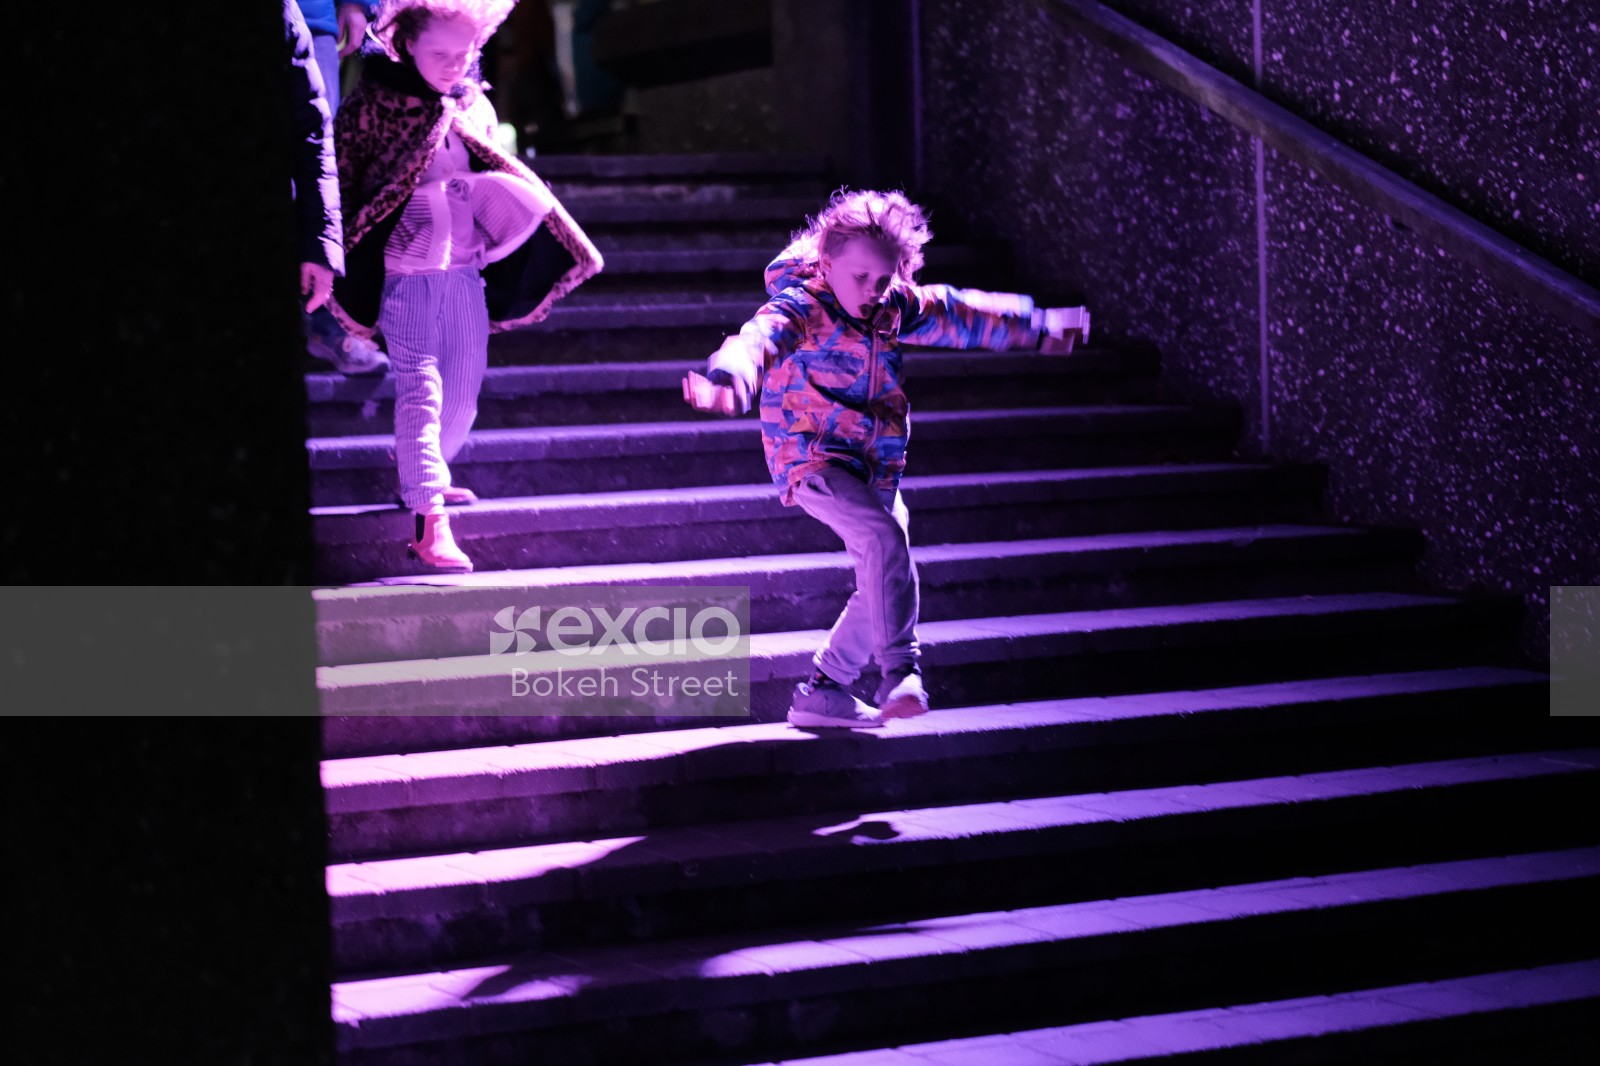 Little girls walking on purple lit stairs 